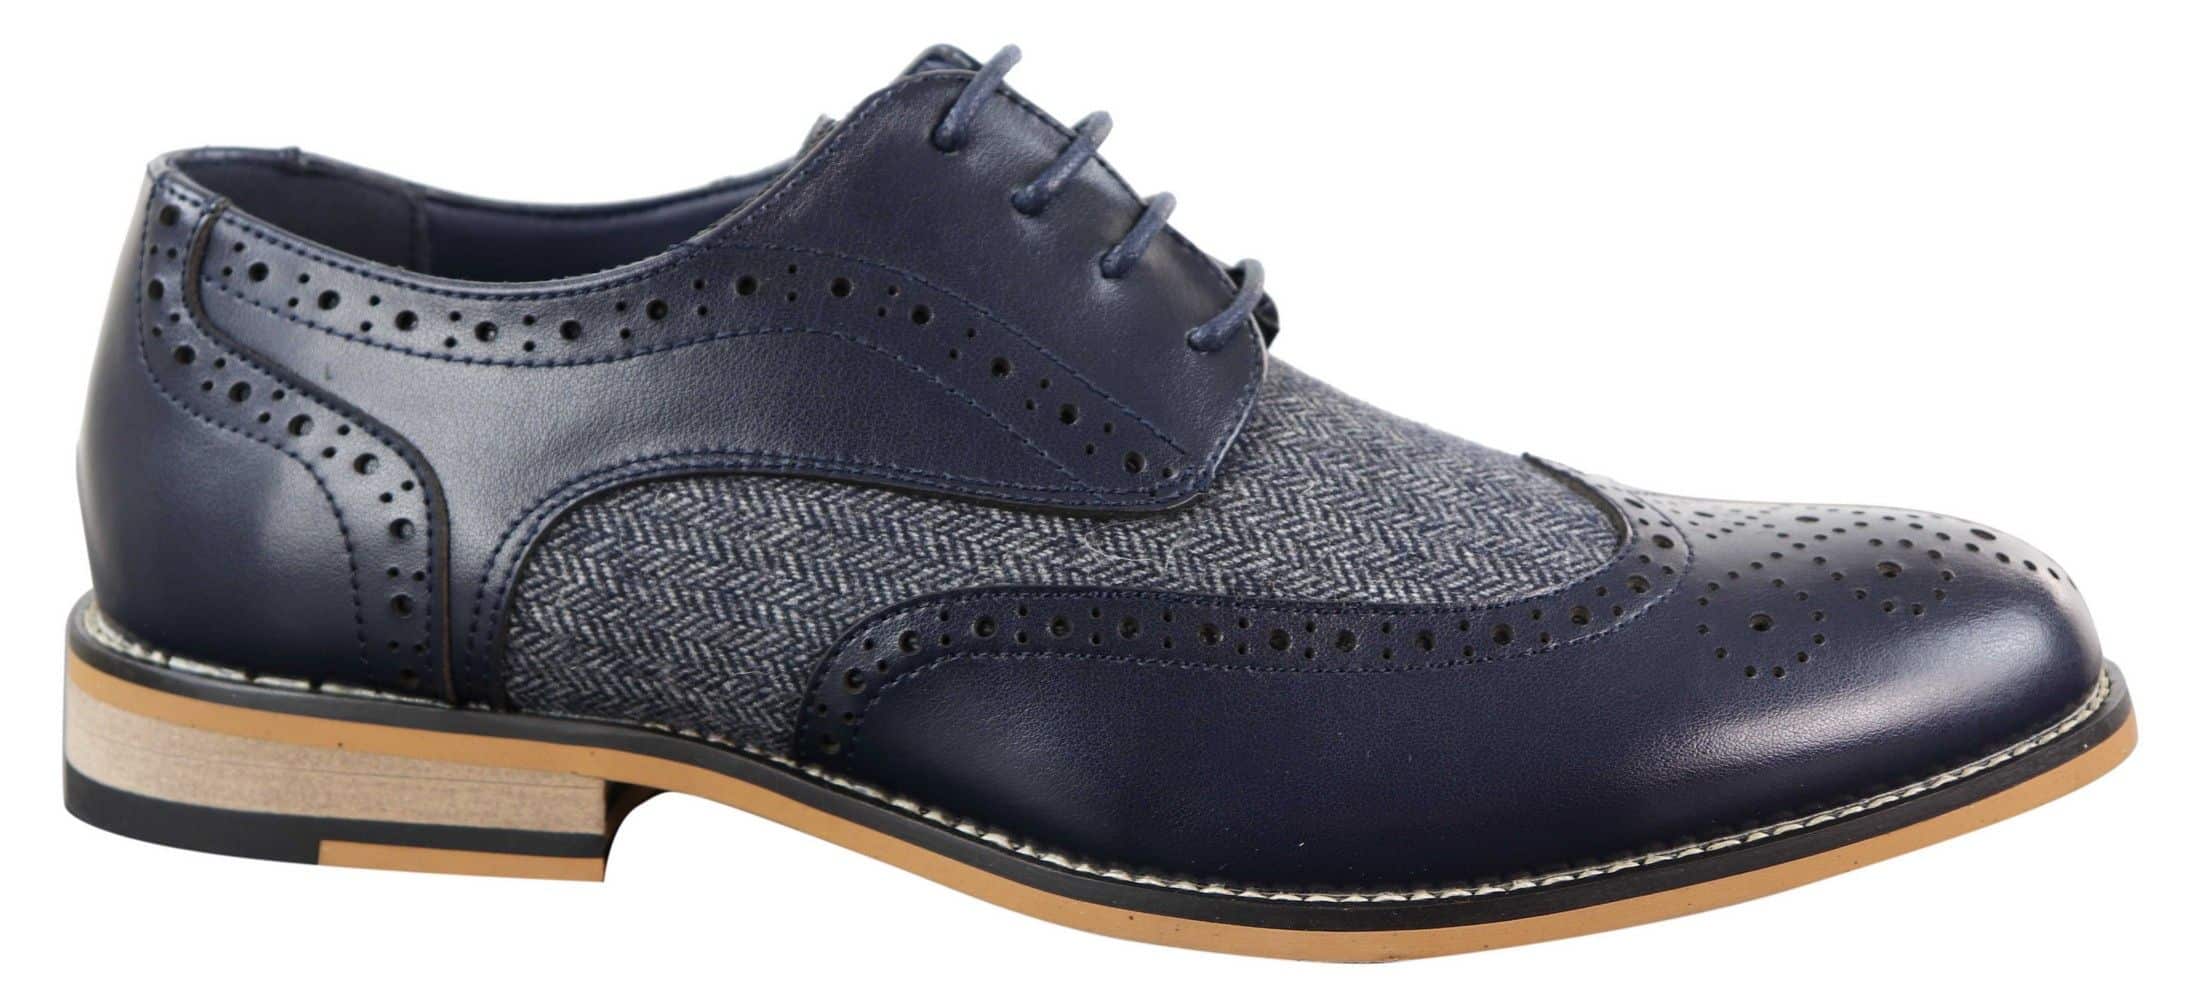 Cavani Horatio - Men's Tweed & Leather Oxford Shoes | Happy Gentleman